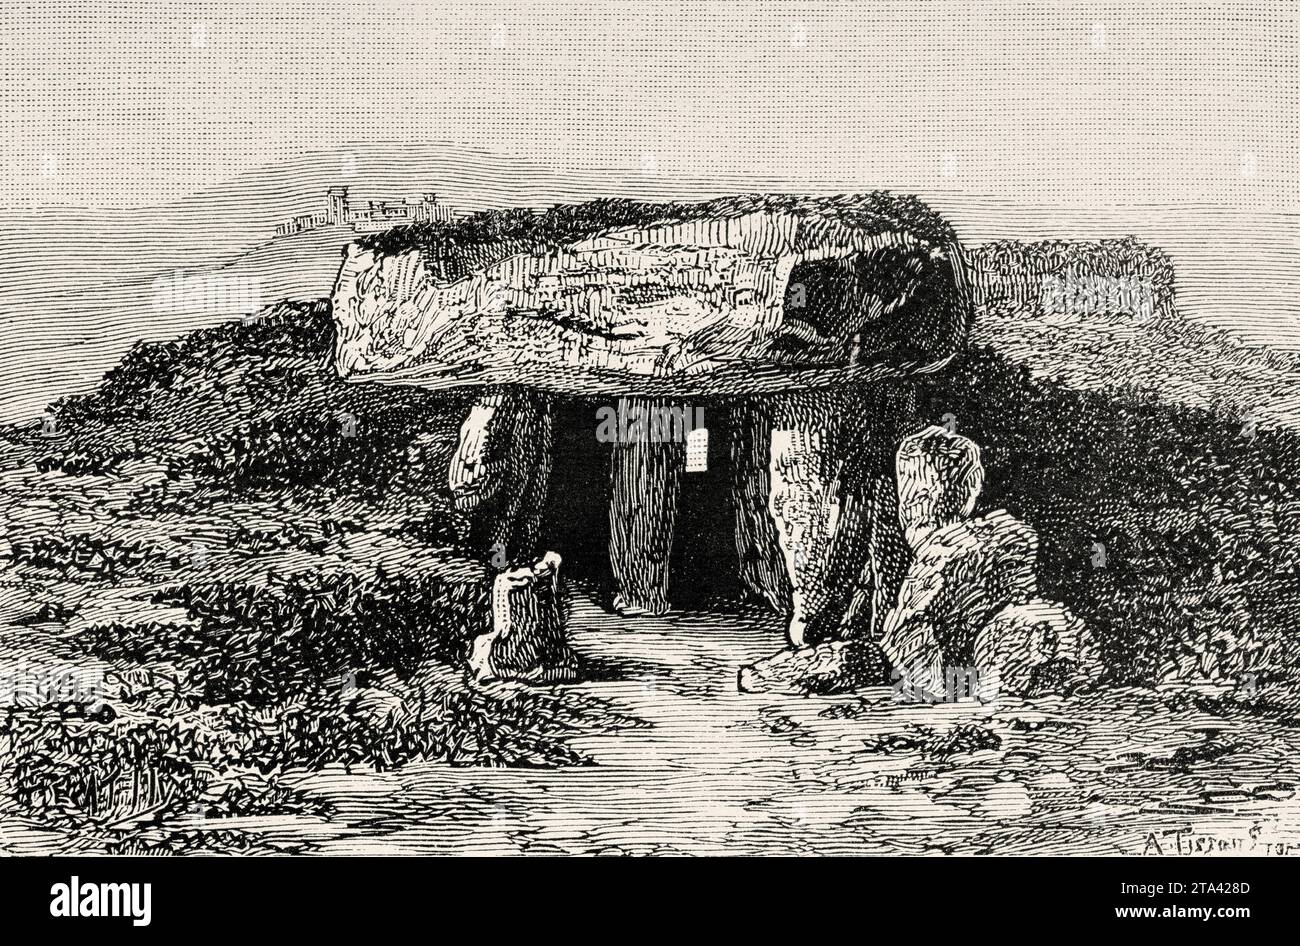 Dolmen megalitico di Menga, Antequera, sito patrimonio dell'umanità dell'UNESCO, provincia di Málaga, Andalusia, Spagna. Vecchia illustrazione di la Nature 1887 Foto Stock